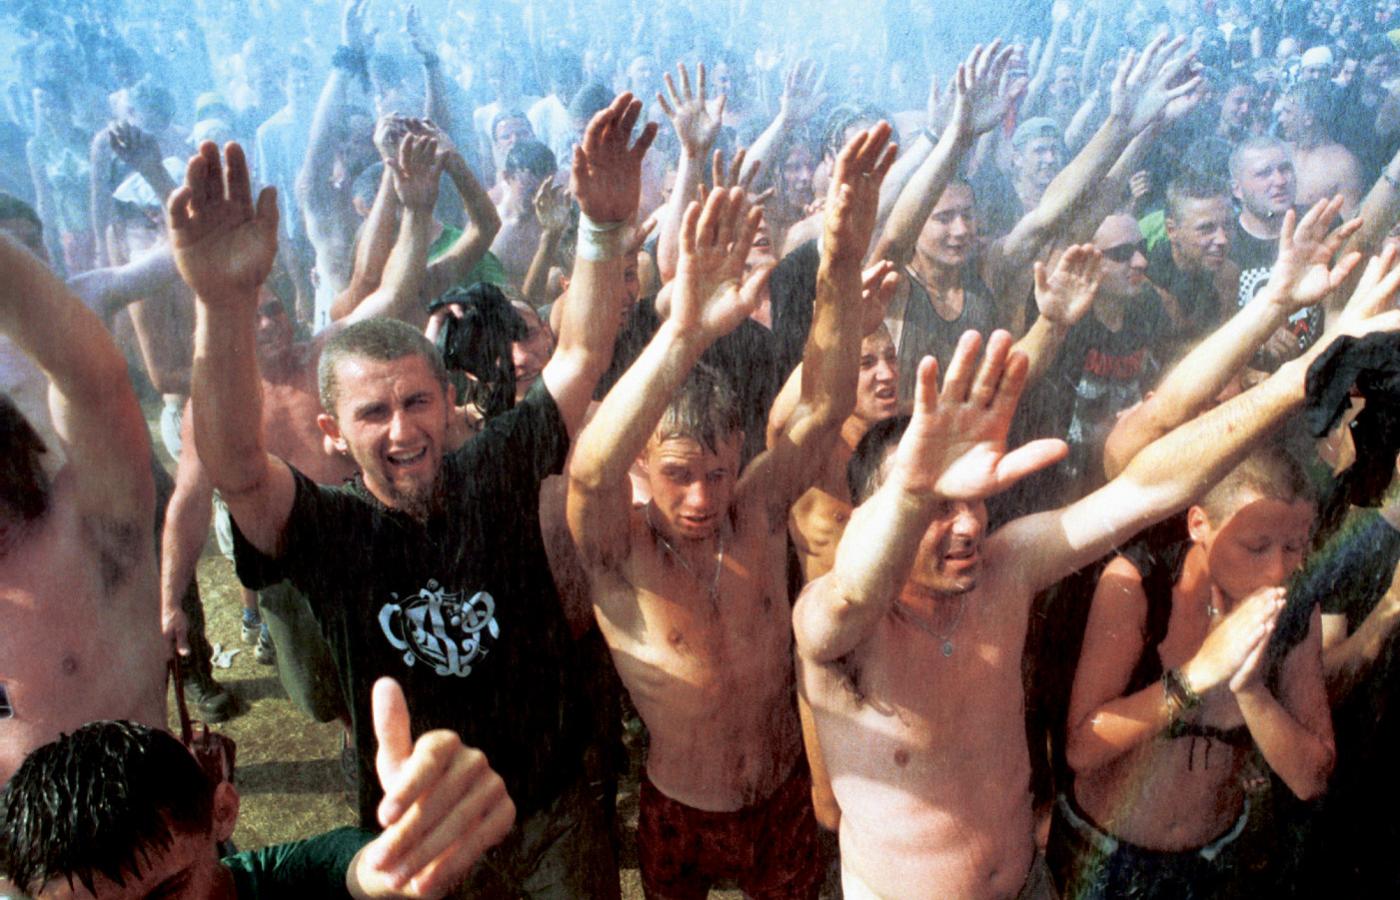 Polski Woodstock: wytaplać się w błocie, żeby długo pamiętać.